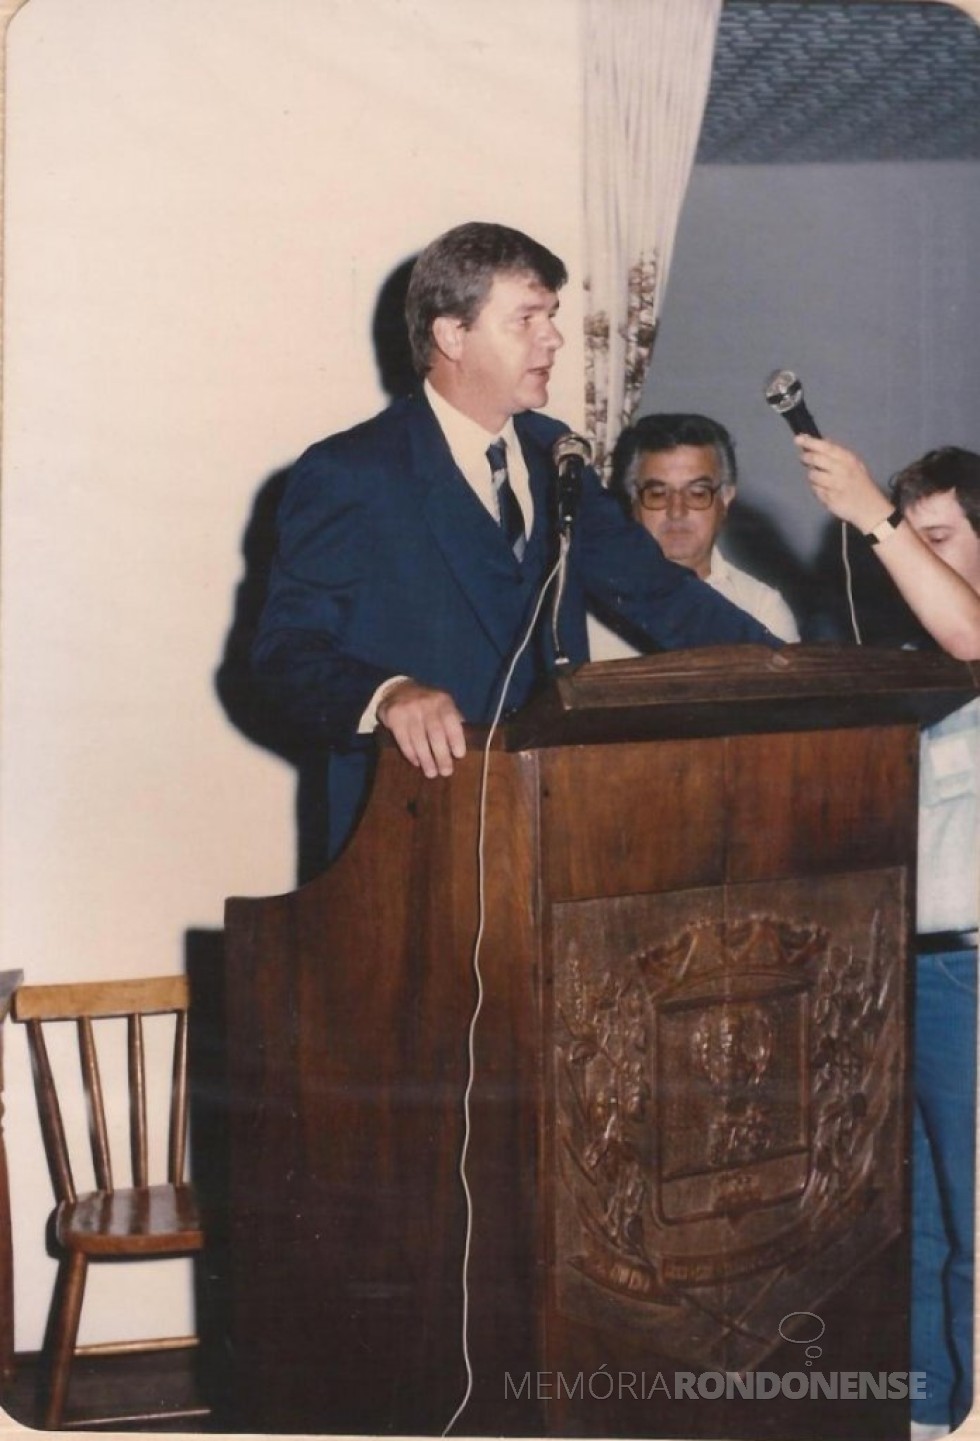 || Dieter Leonard Seyboth empossado como 9º prefeito municipal de Marechal Cândido Rondon, em janeiro de 1989.
Imagem: Acervo pessoal - FOTO  9 - 